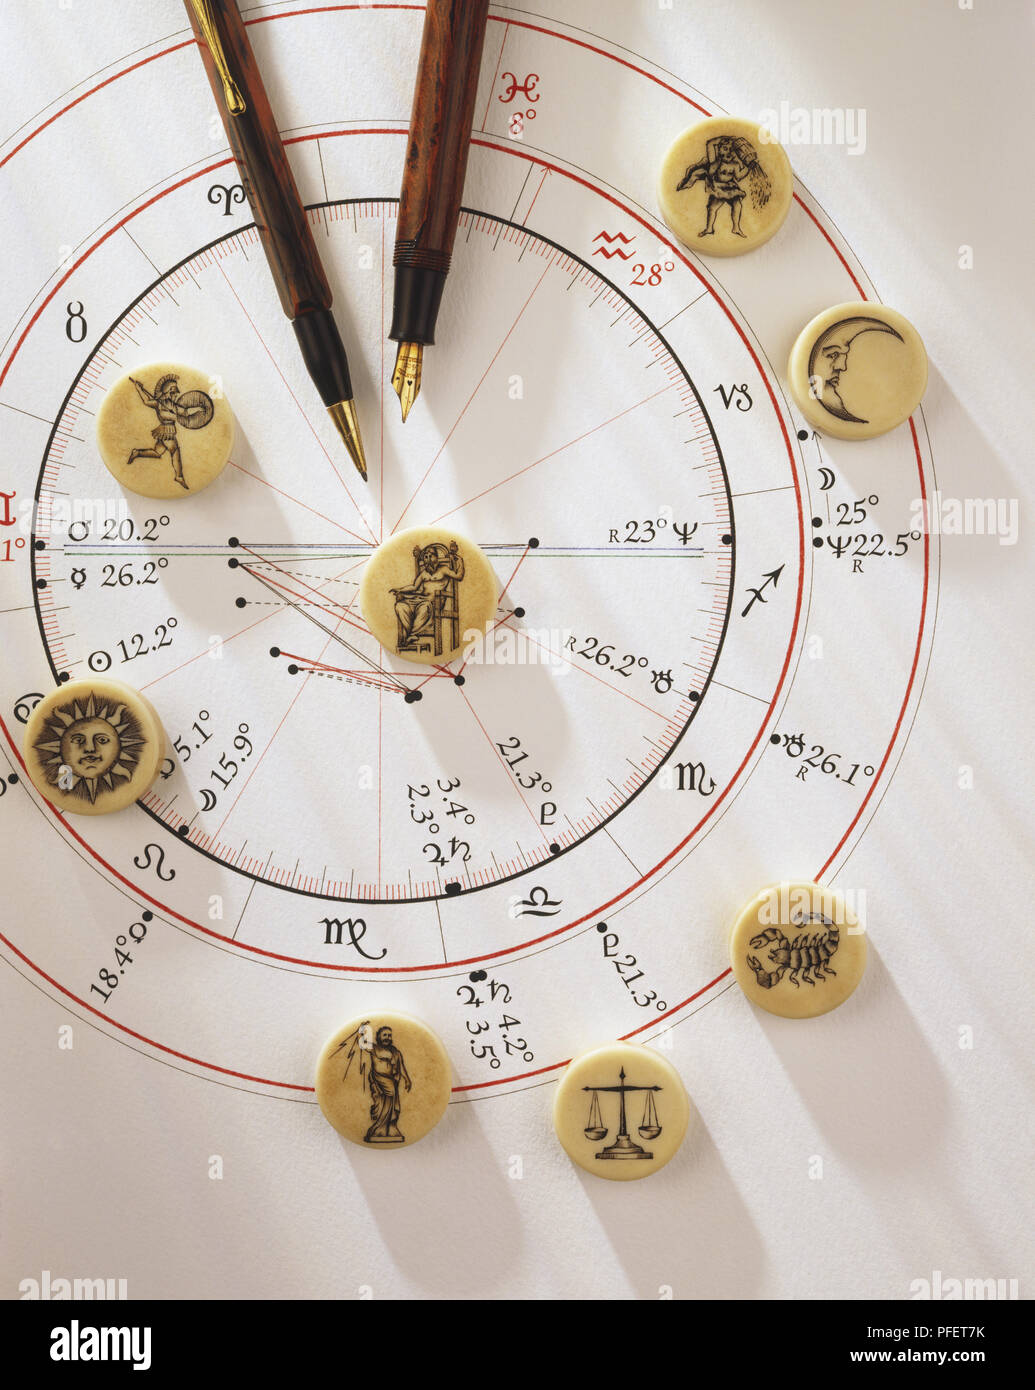 Eine astrologische Horoskop mit Elfenbein Discs, die Zeichen des Tierkreises und zwei Stifte Stockfoto